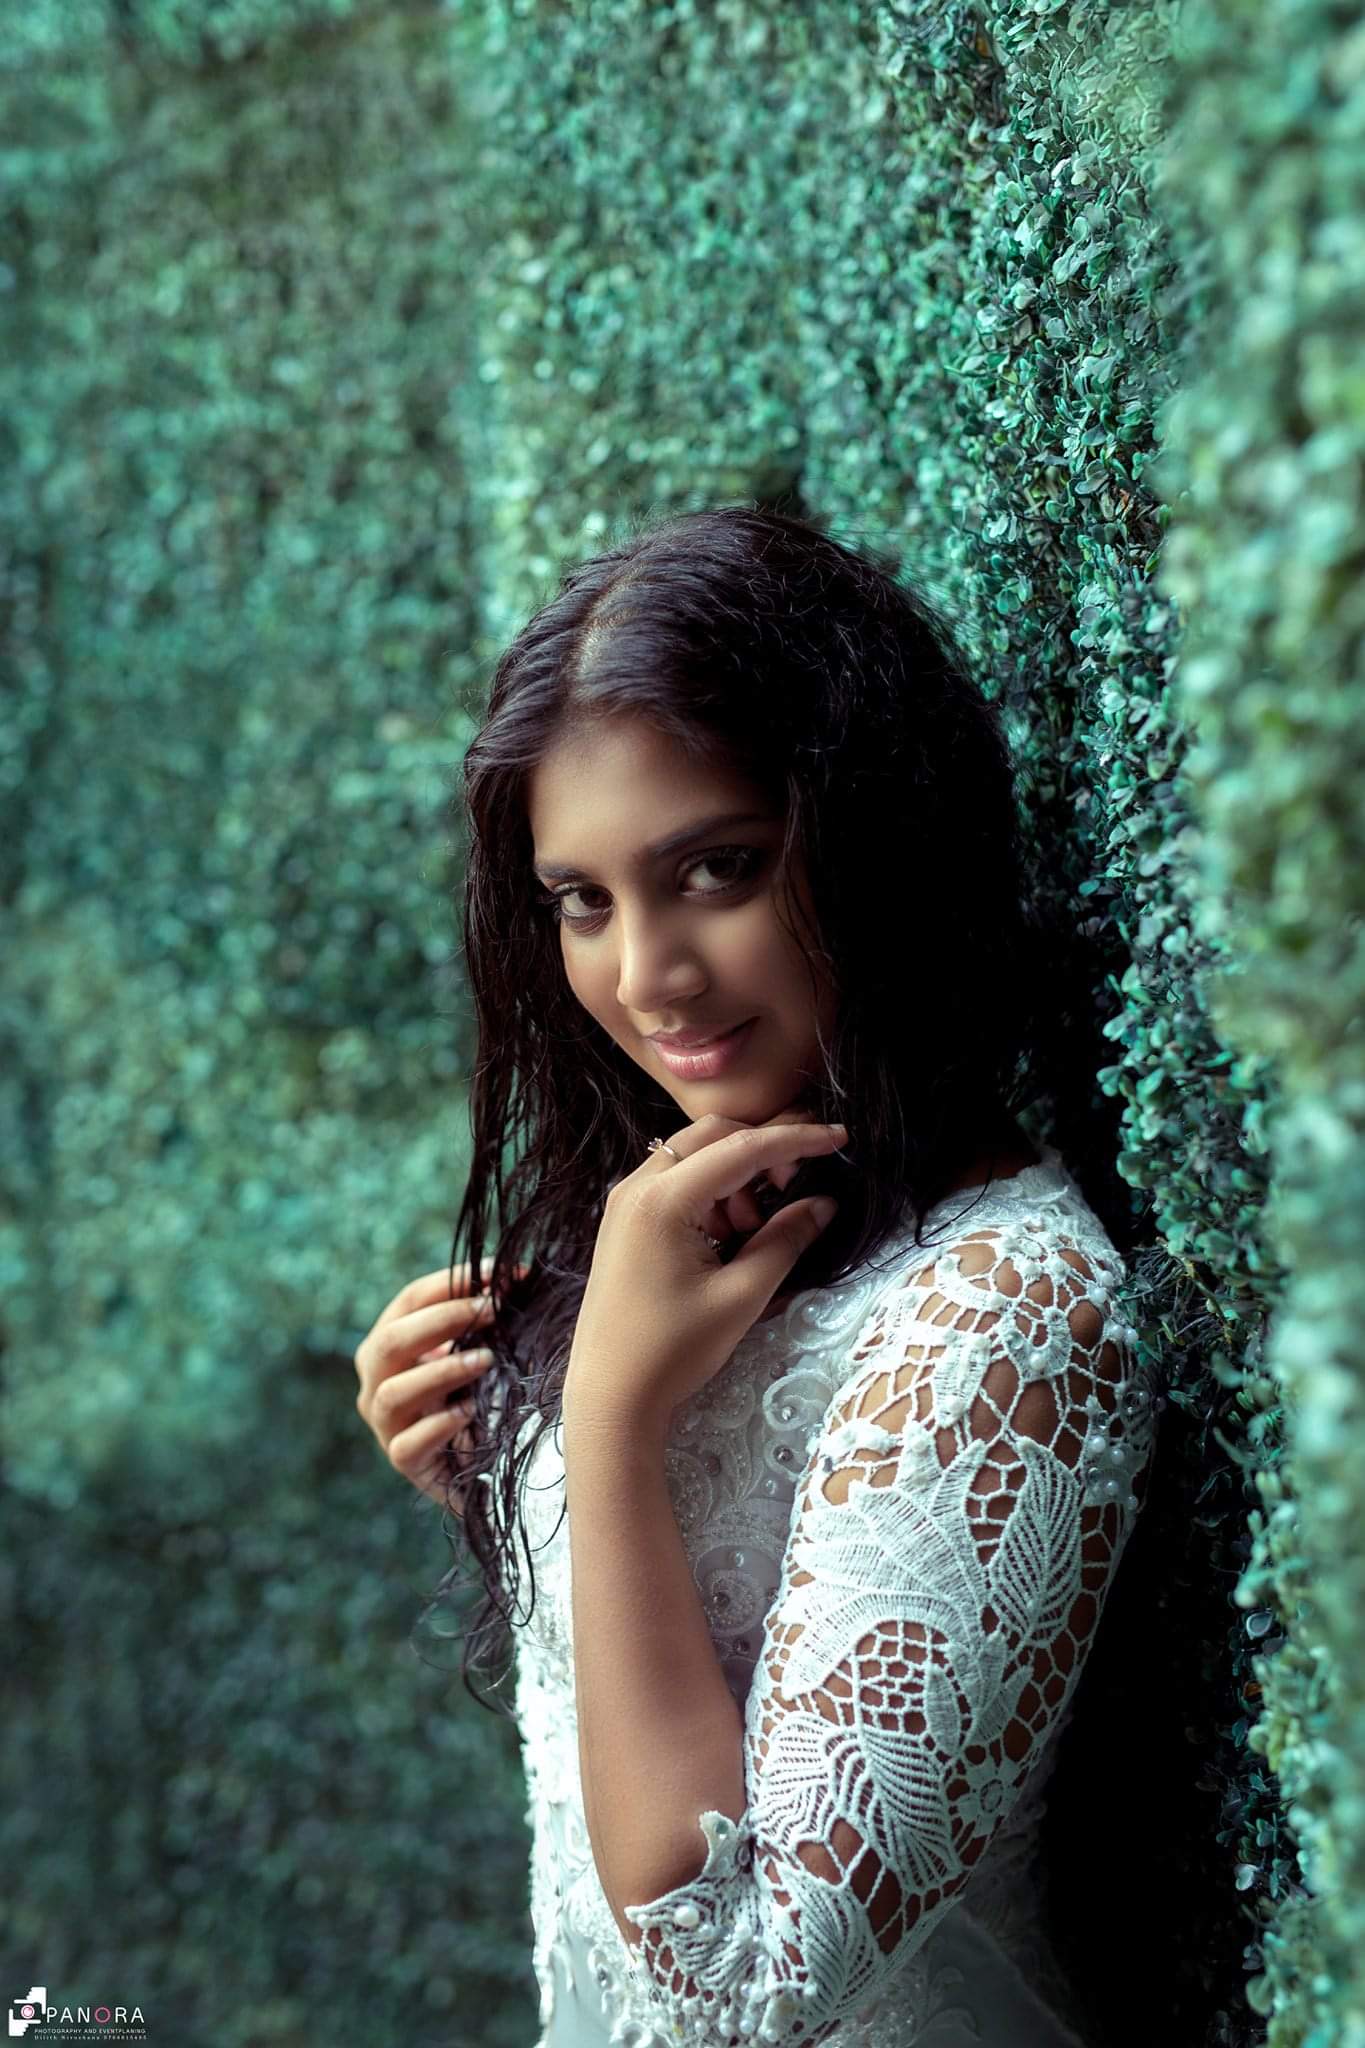 Sonali Fonseka Sex - Sri Lankan Actress Senali Fonseka Photoshoot Stills in White Dress